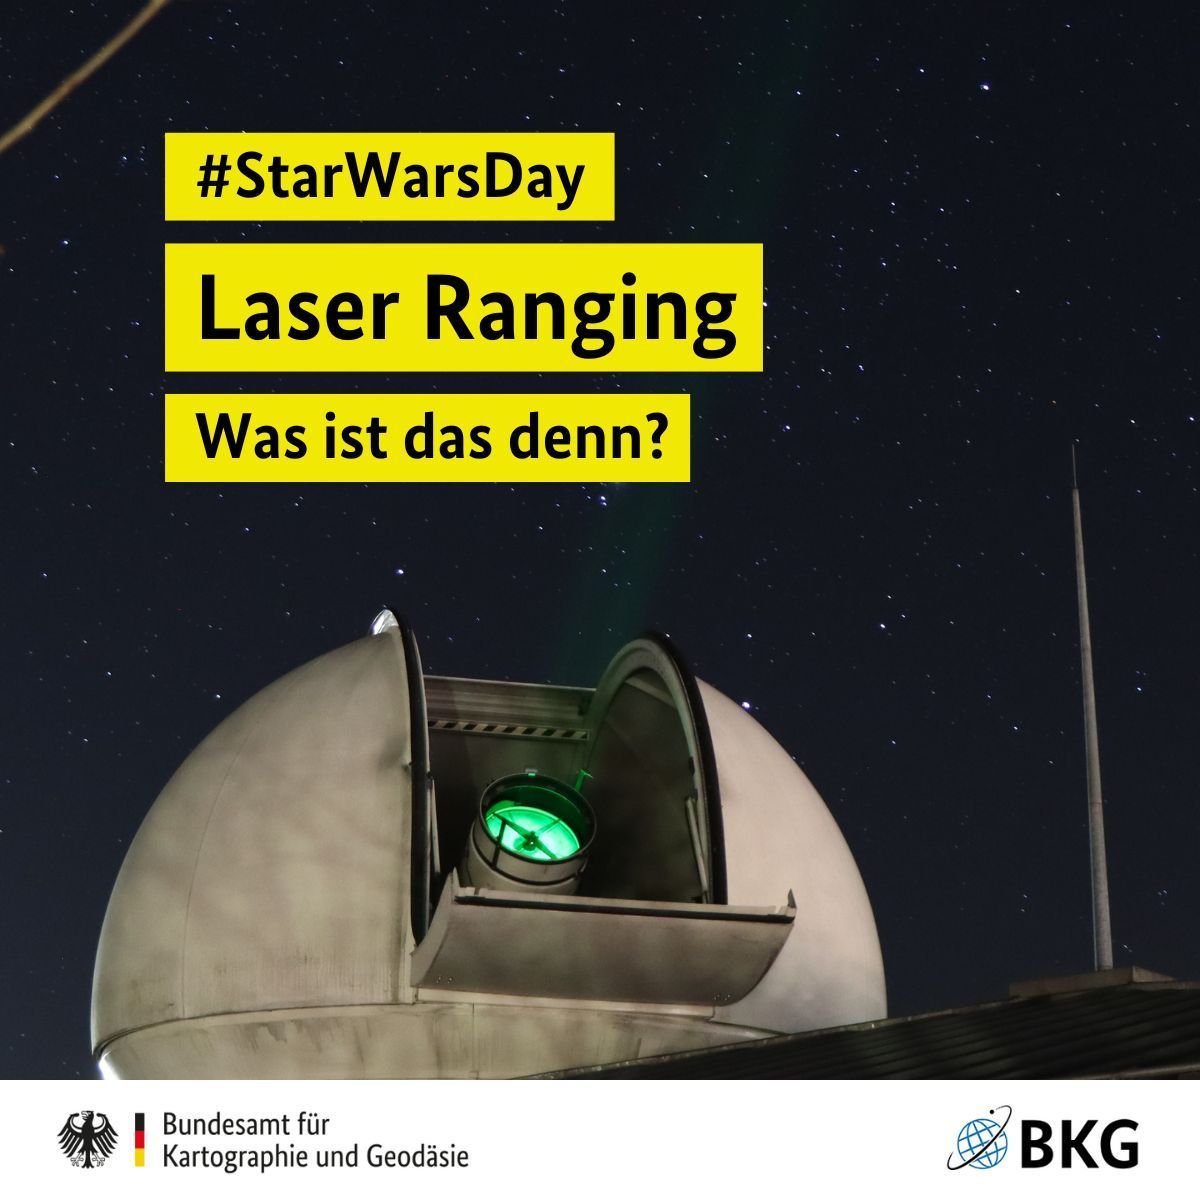 Schon gewusst? Beim Laser Ranging 🔭 ermitteln wir mit Laserimpulsen die Entfernung zum Mond 🌕 oder zu Satelliten 🛰️. So können wir auch Satellitenbahnen exakt bestimmen, damit deine Navi-App 📱 den richtigen Weg findet. #StarWarsDay #MayThe4thBeWithYou #WirGebenOrientierung